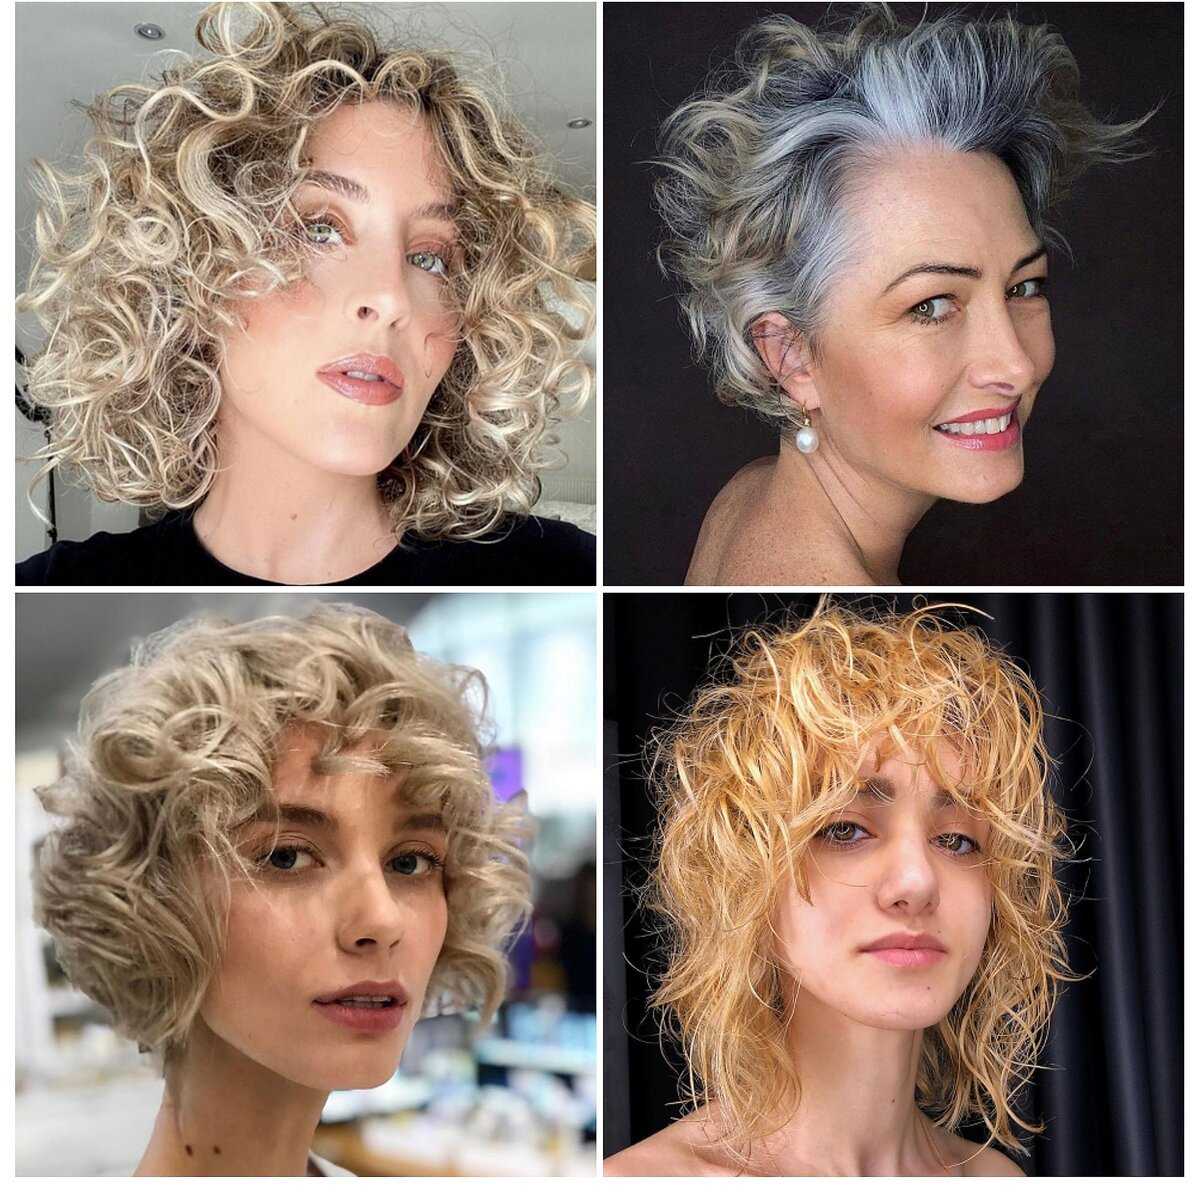 Биозавивка волос фото до и после на короткие волосы крупные локоны фото